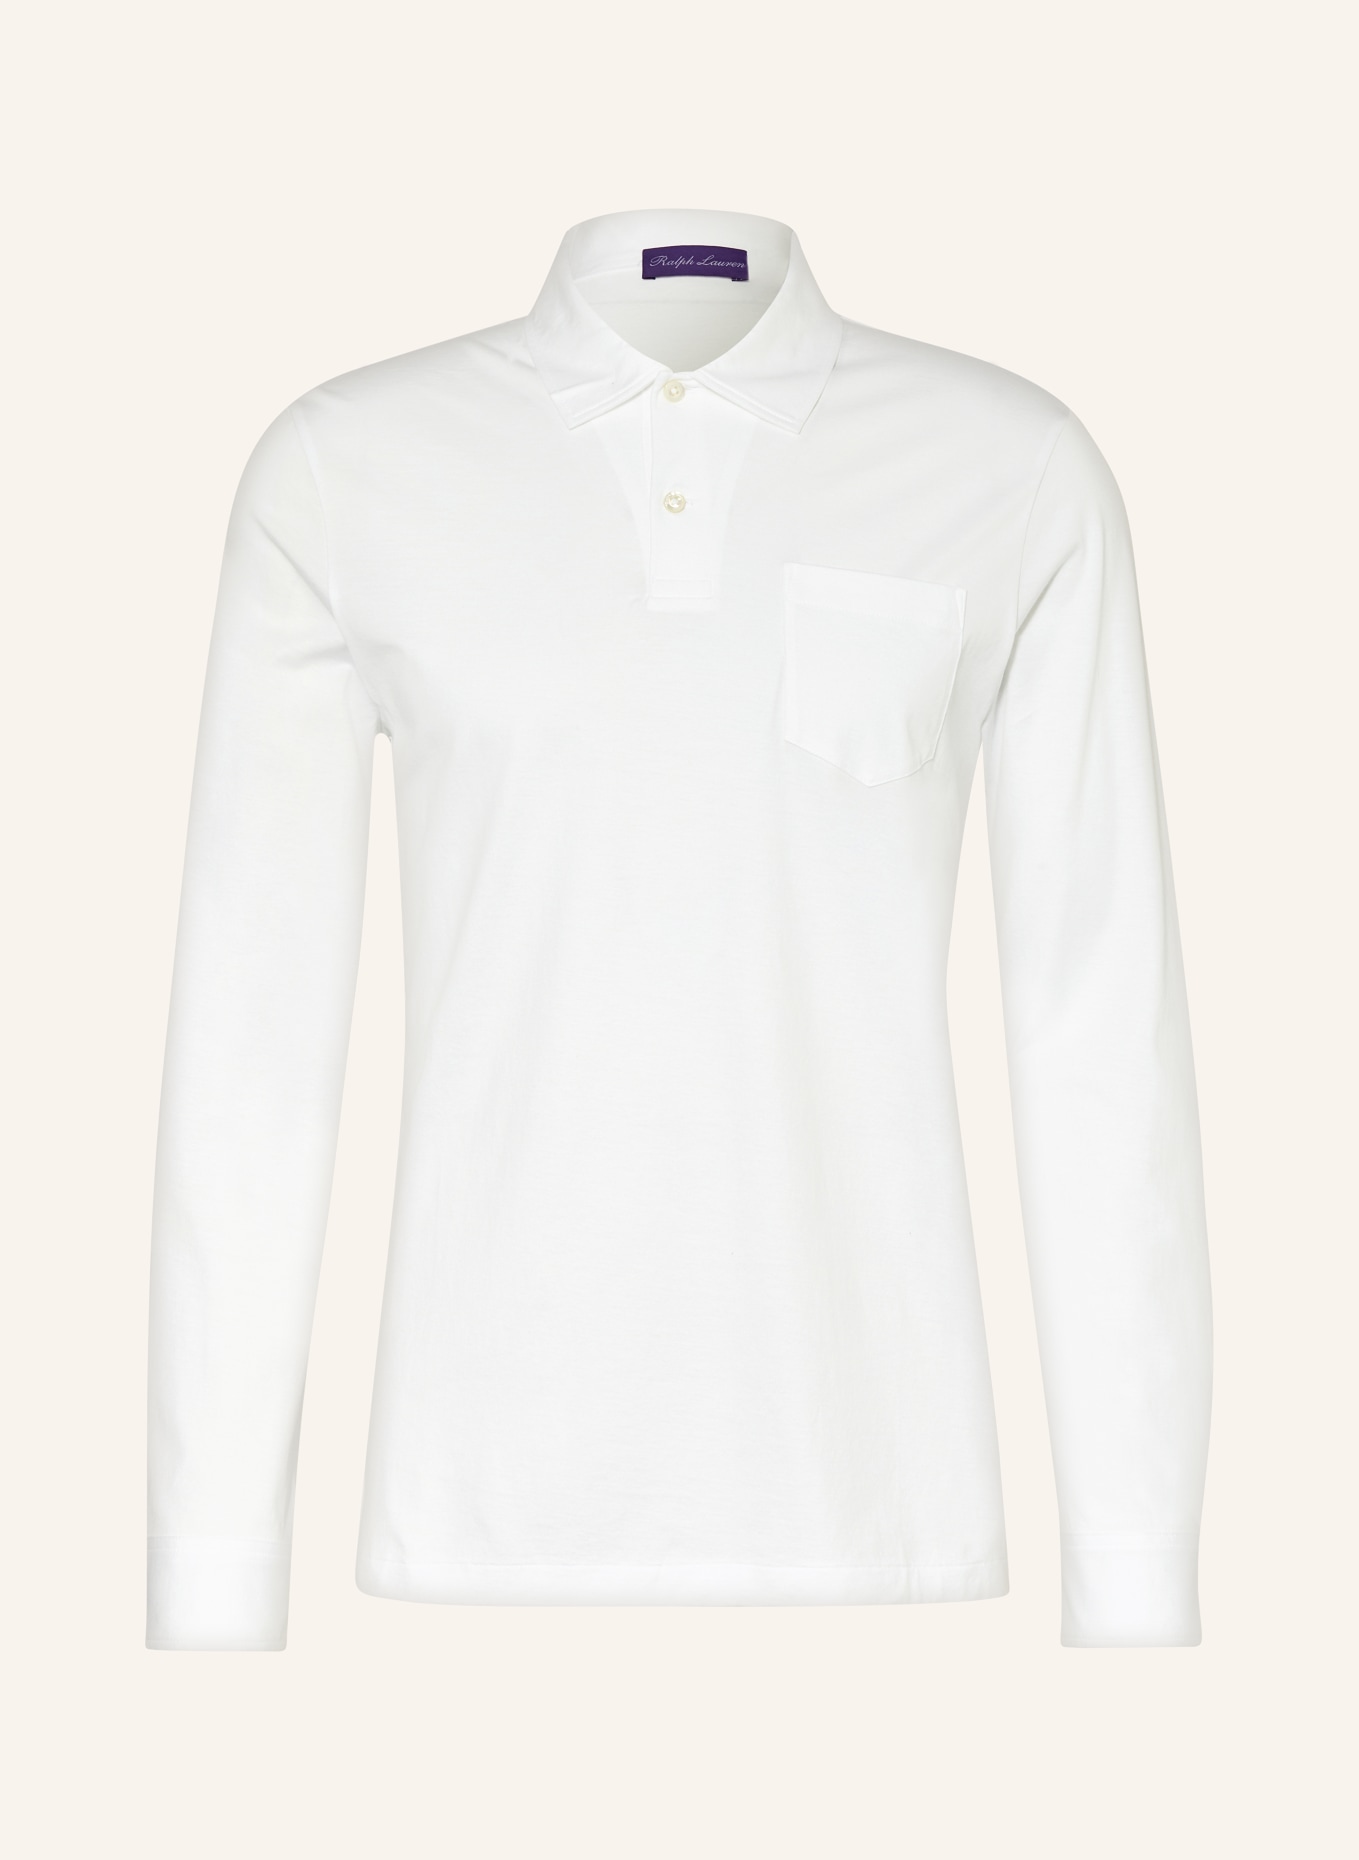 RALPH LAUREN PURPLE LABEL Jersey polo shirt, Color: WHITE (Image 1)